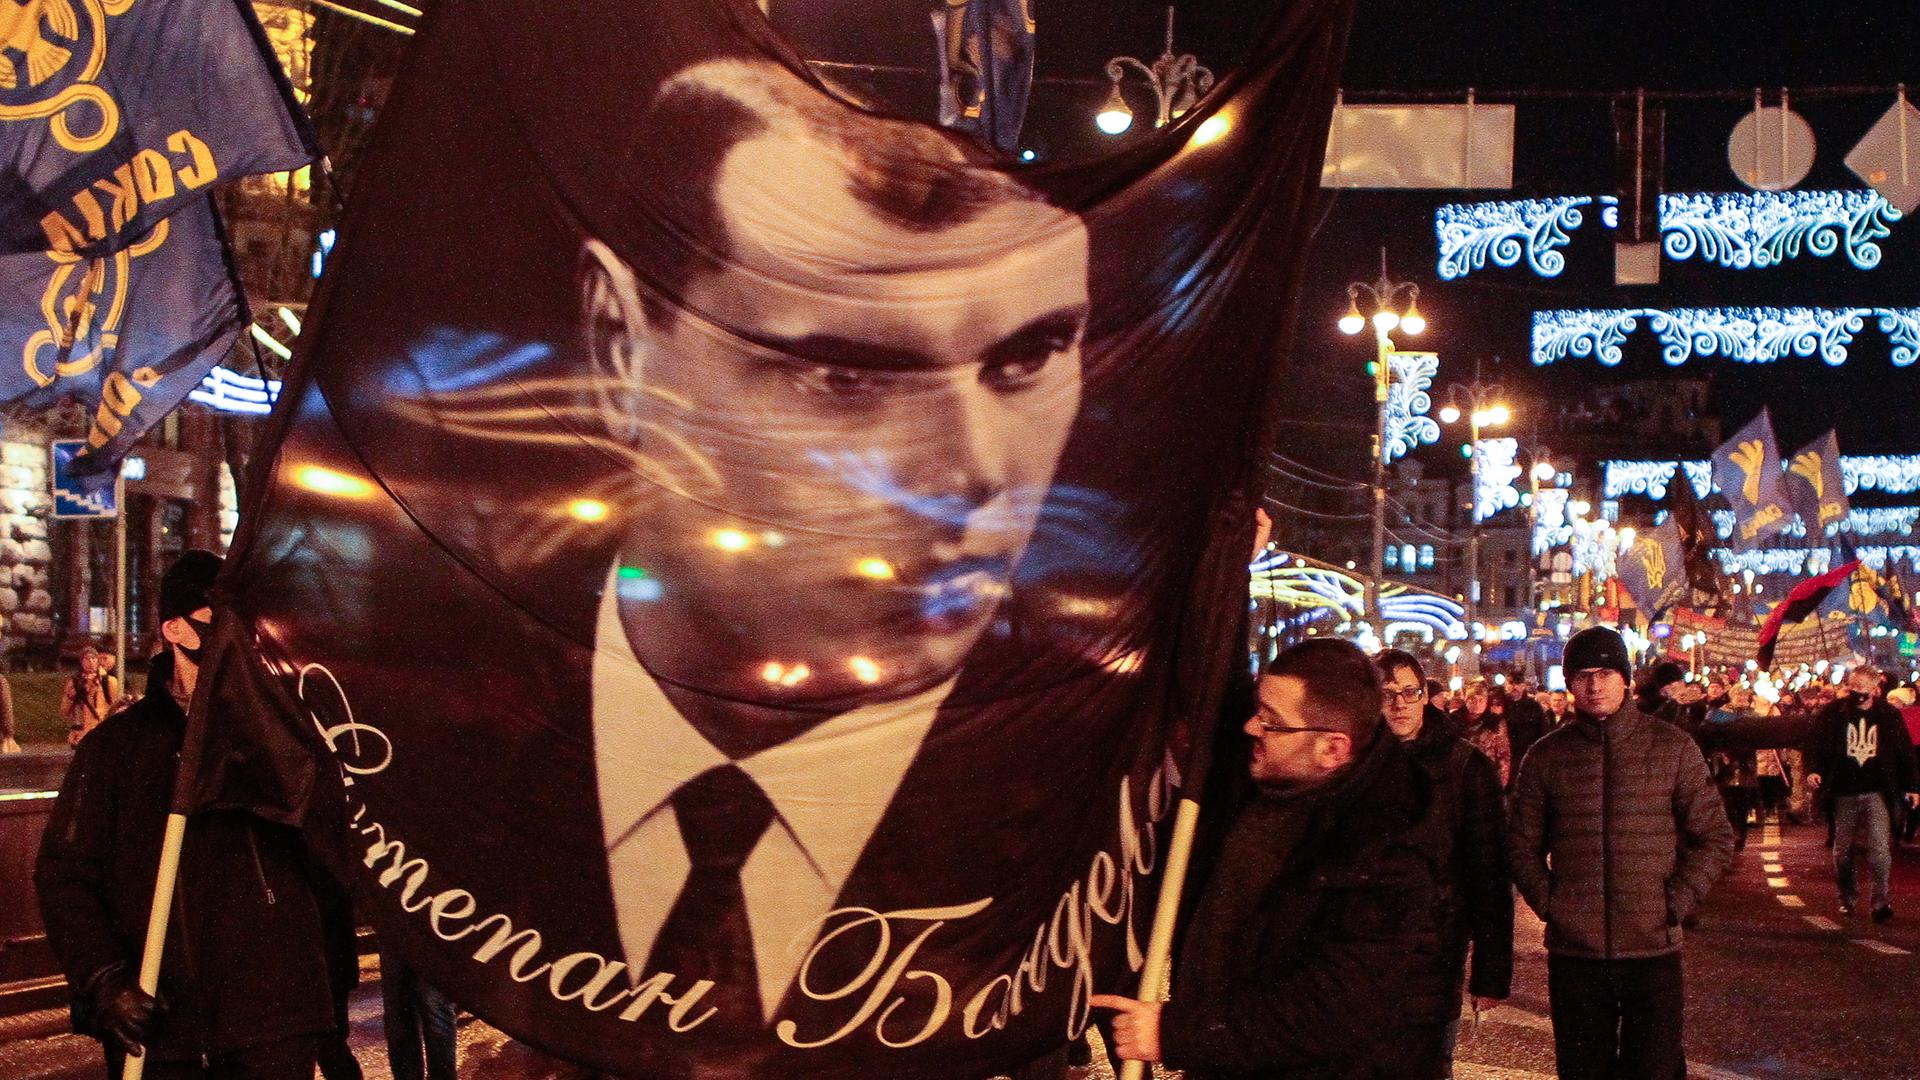 Fackelzug von rechten Aktivisten und der OUN (Organisation Ukrainischer Nationalisten) zum 113. Geburtstag von Stepan Bandera am 1. Januar 2022 in Kiew